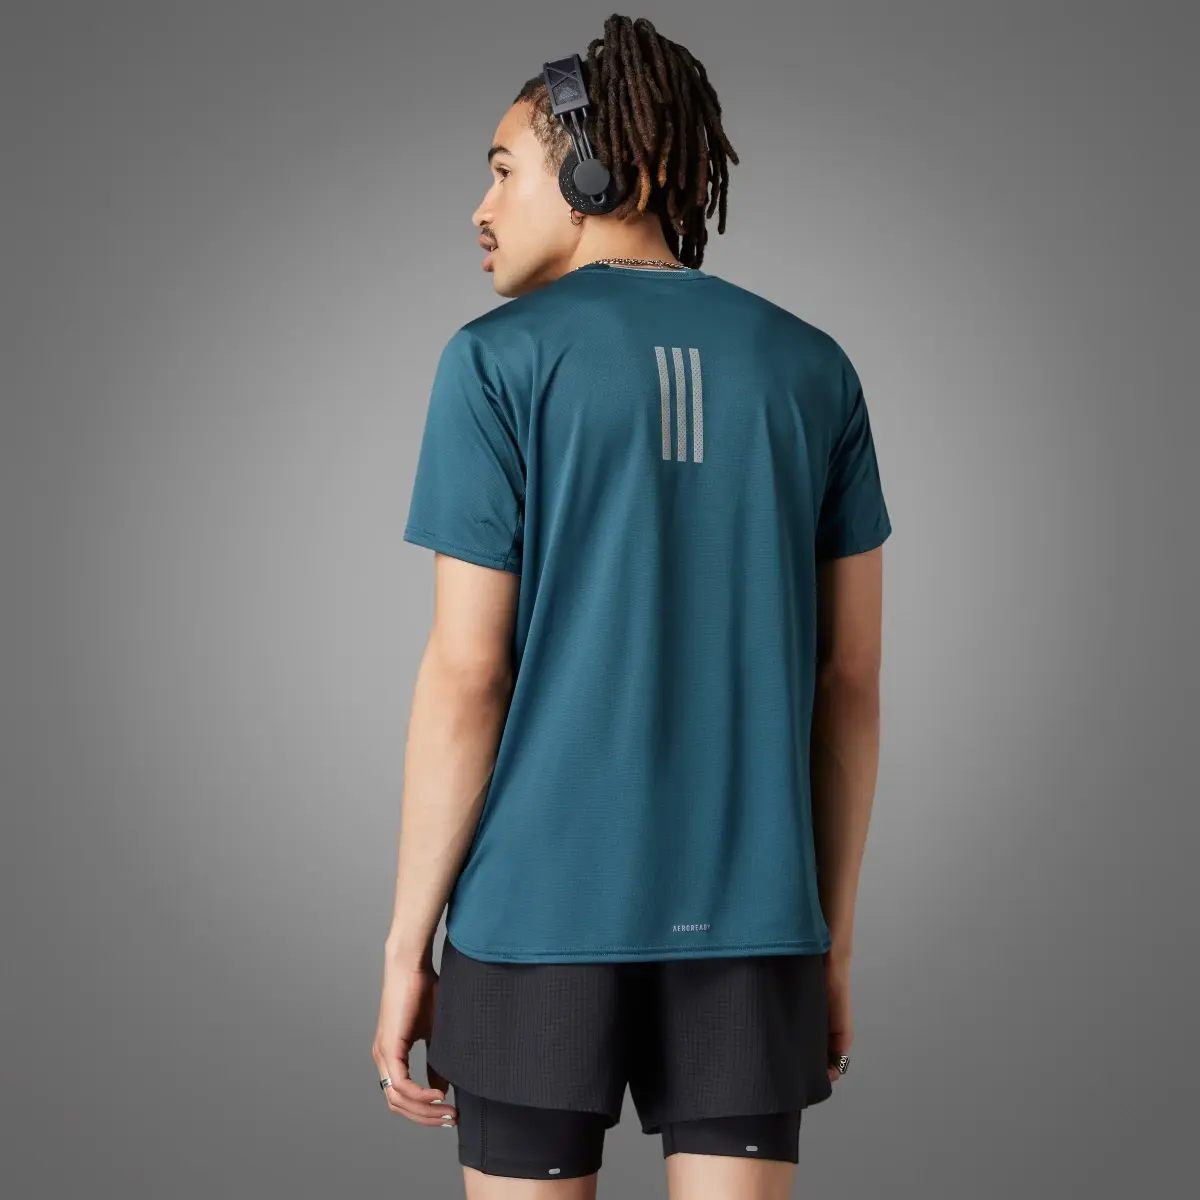 Adidas Designed 4 Running Tişört. 2